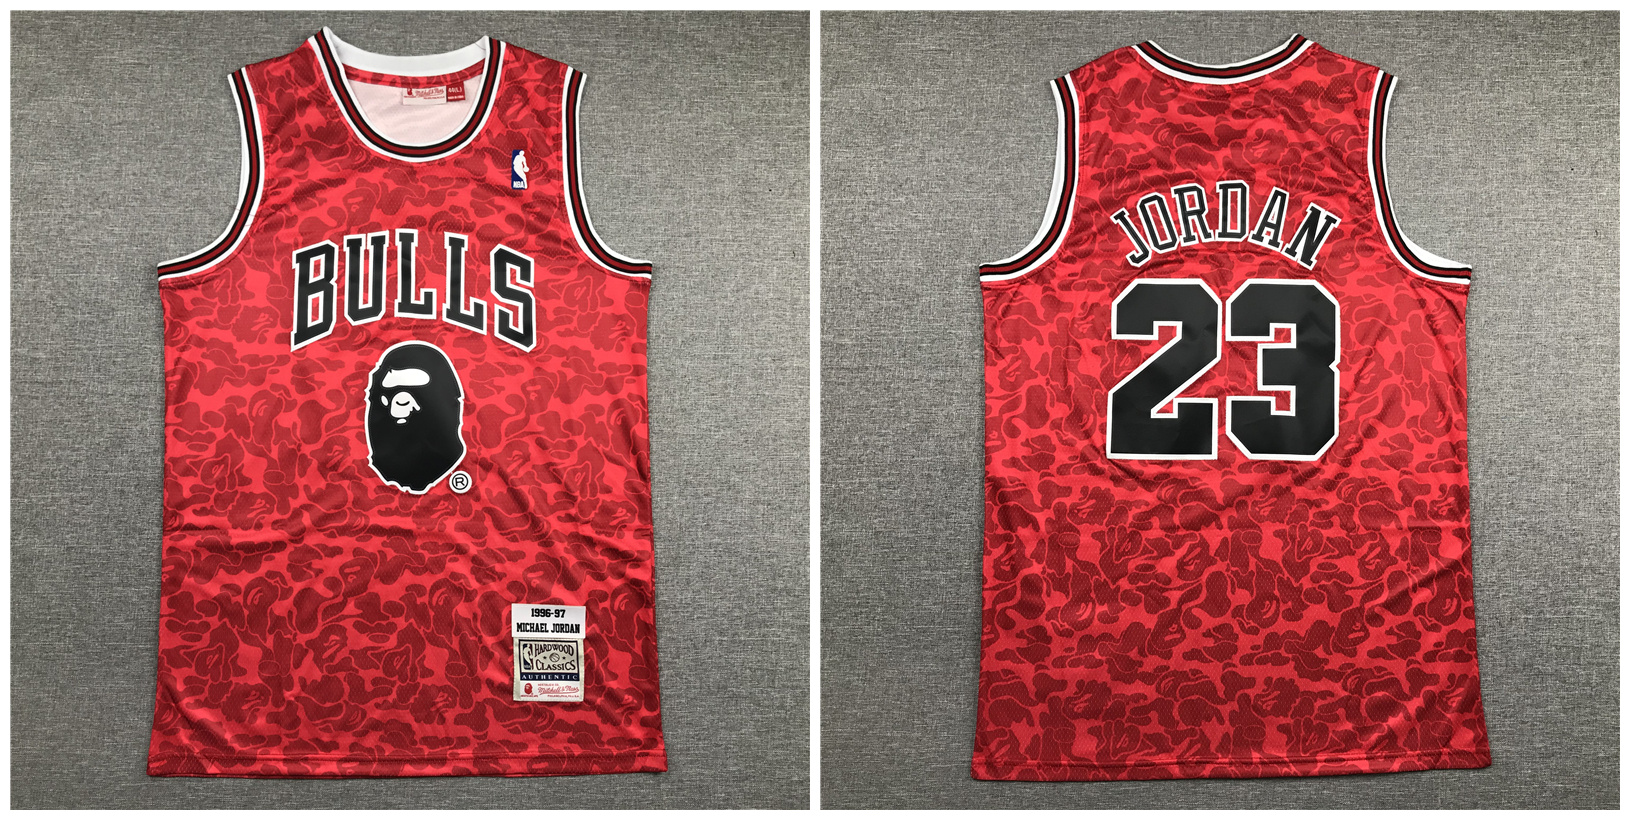 Bulls Bape 23 Michael Jordan Red 1996-97 Hardwood Classics Jersey